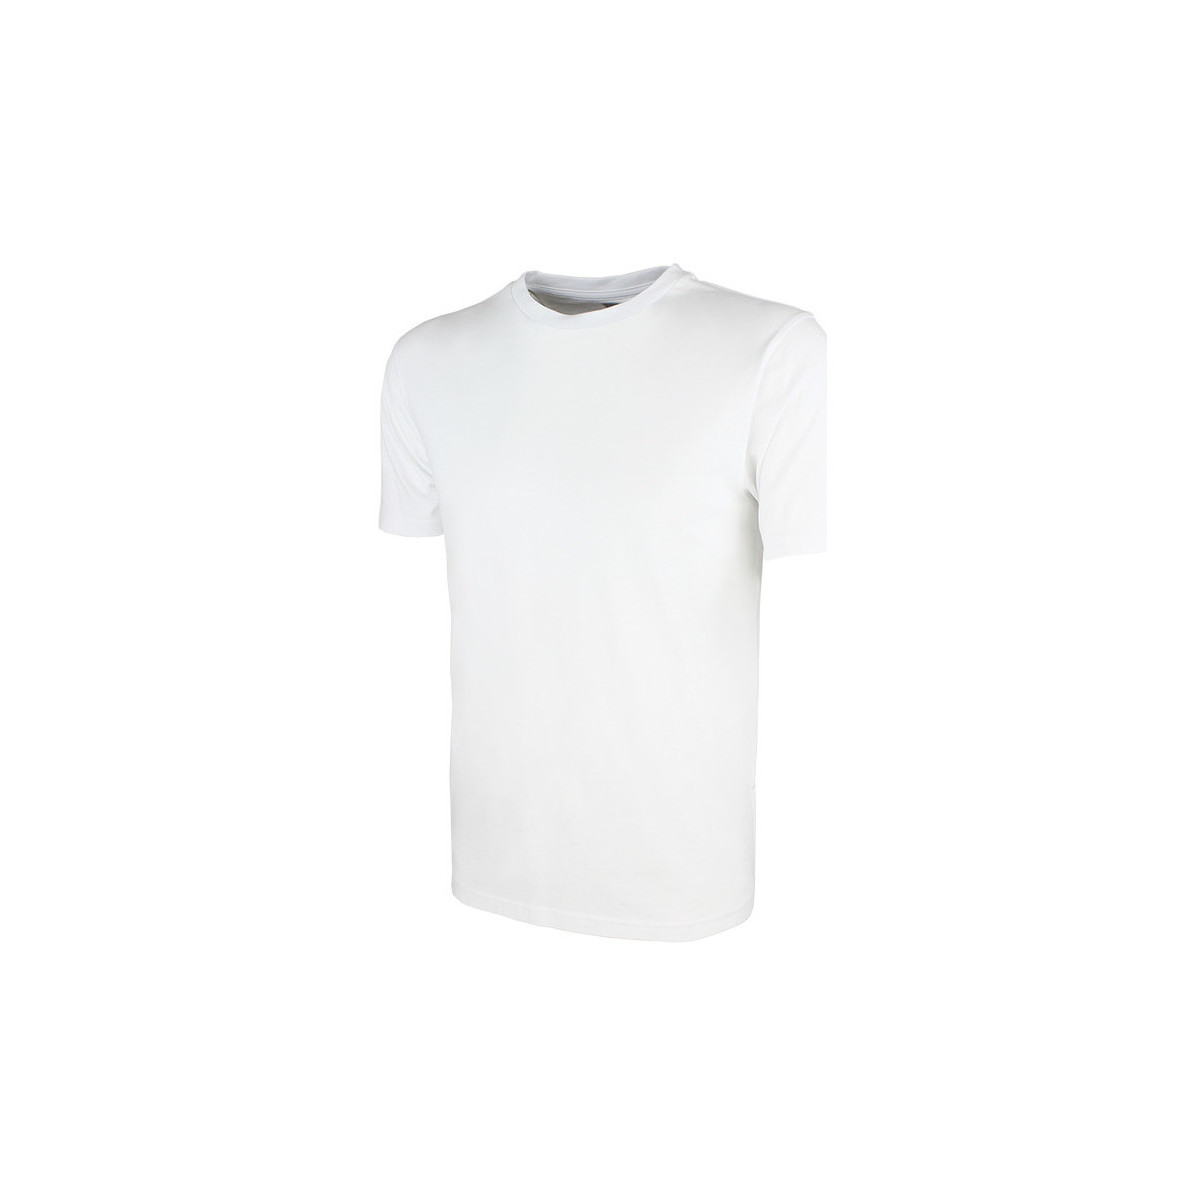 Kappa Blanc T-shirt Rieti XOXLAaye